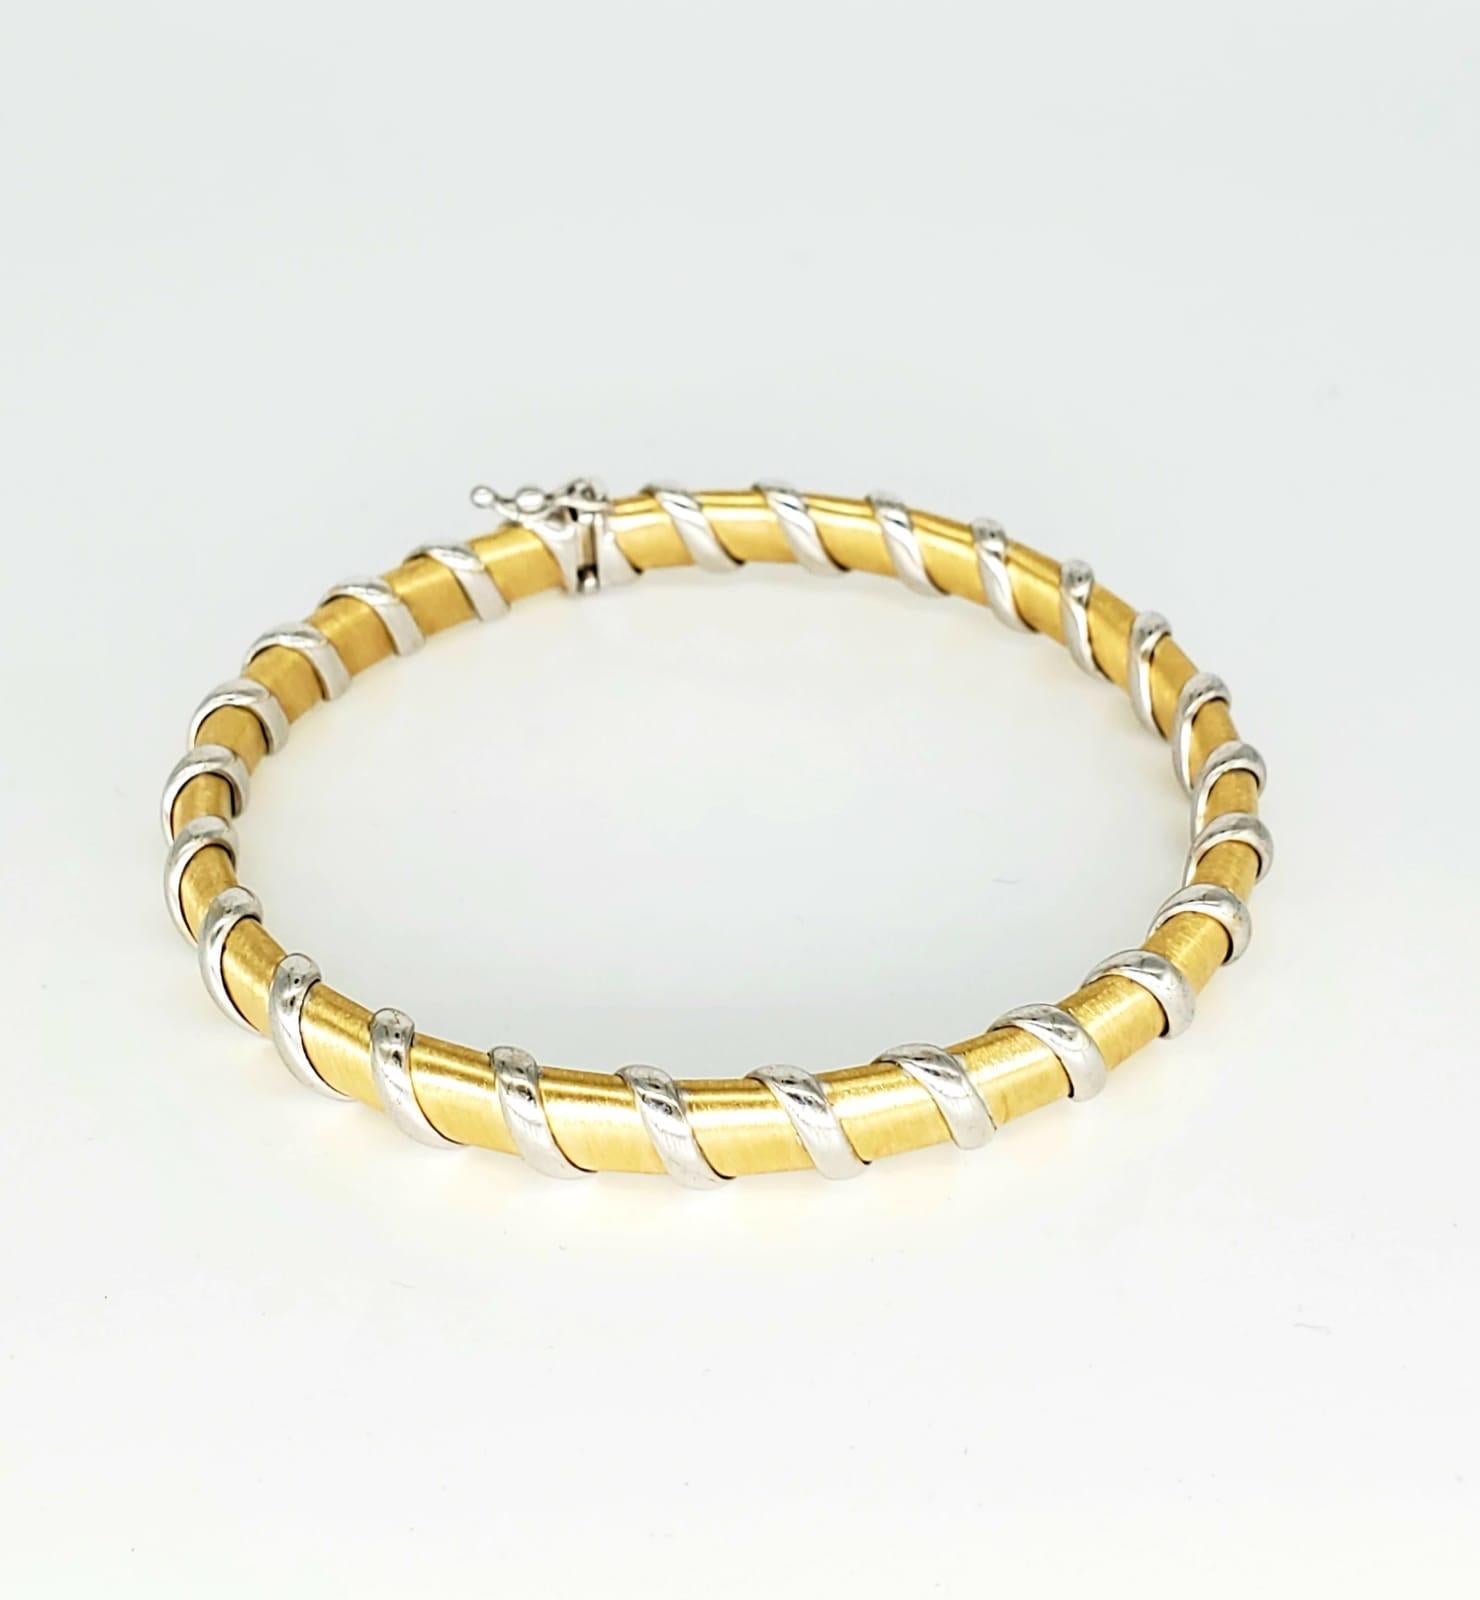 Vintage 2-Tone Swirls Satin Finish Bangle 18k 750 Gold. Le bracelet pèse 17,2 grammes d'or 18k. La largeur est de 7 mm. Le bangle convient à une taille de 8,5